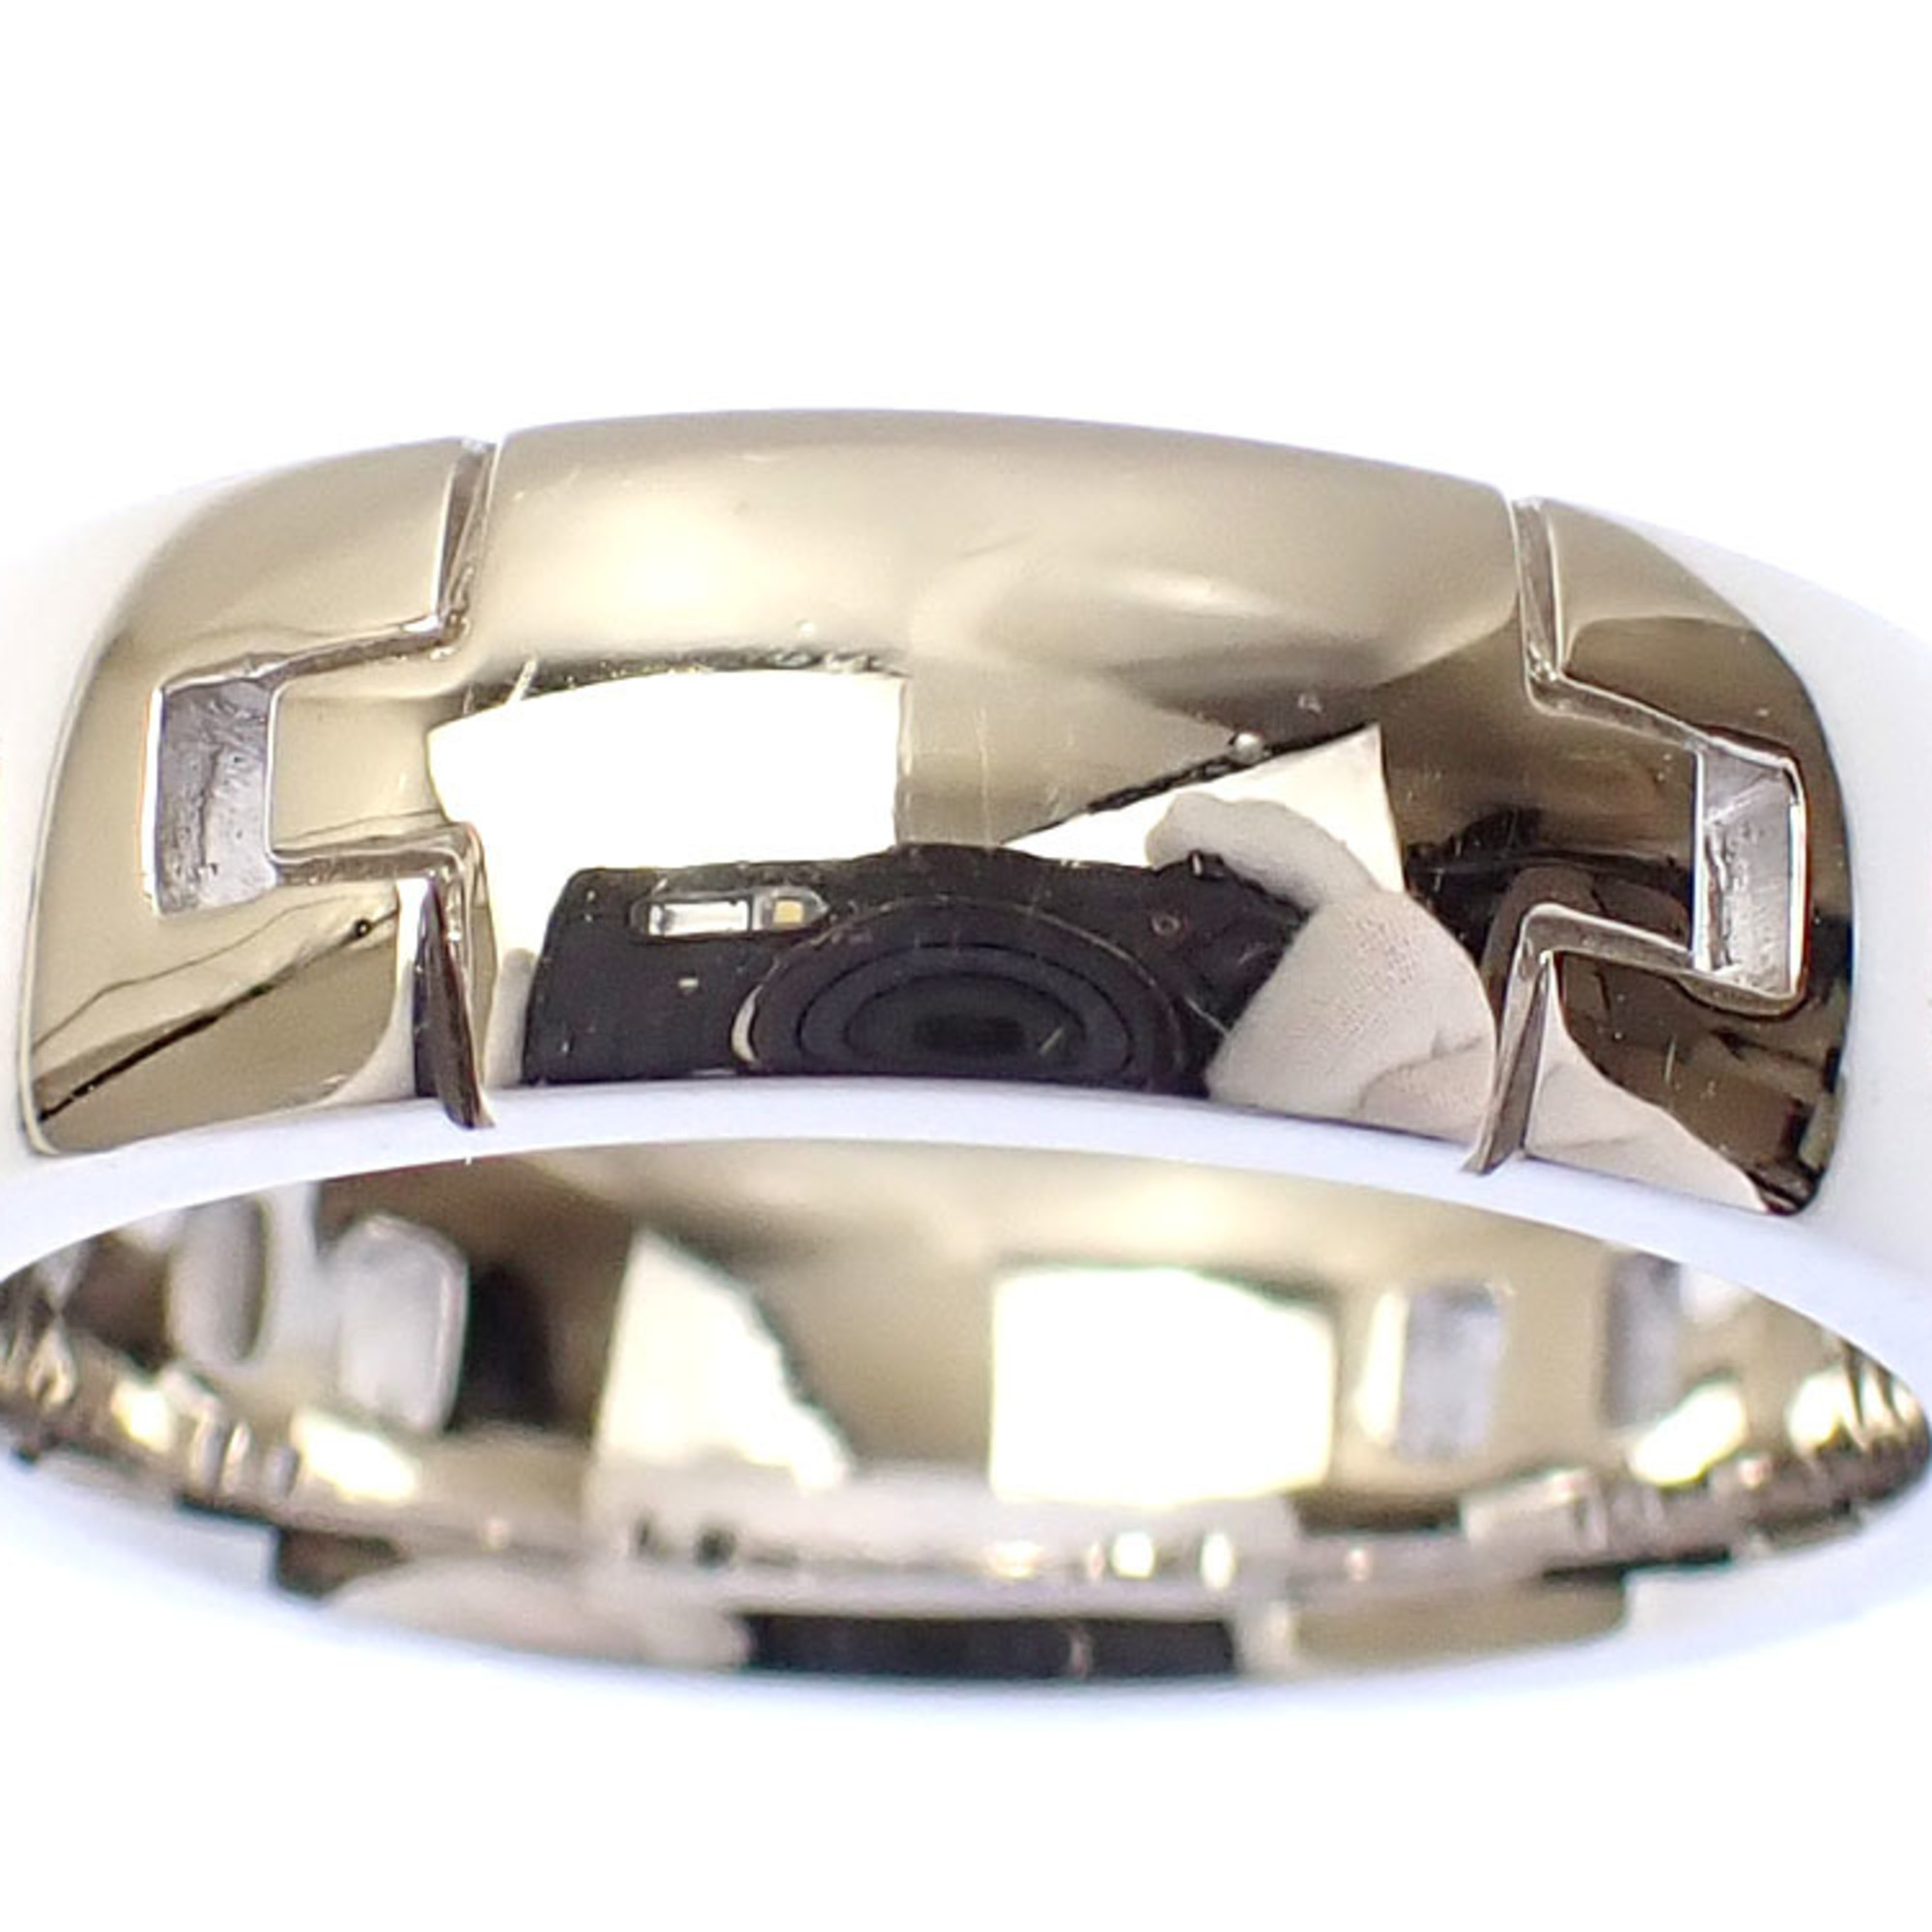 Hermes Hercules Ring for Women, K18WG, Size 9.5, #50, 7.5g, 750, 18K White Gold